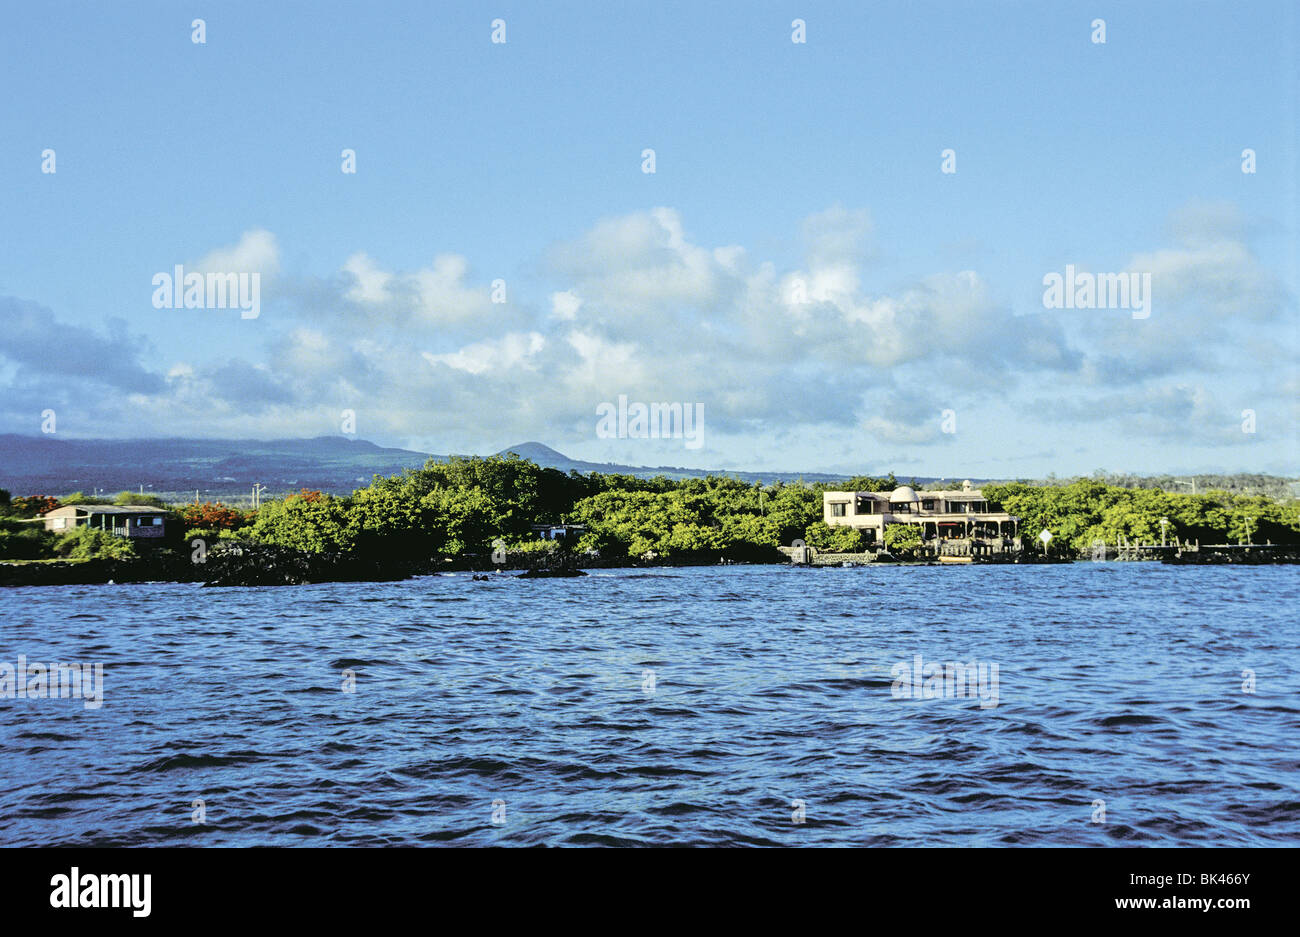 Academy Bay sur l'île de Santa Cruz, Galapagos, Equateur - (Mangrove Rouge Inn sur la droite) Banque D'Images